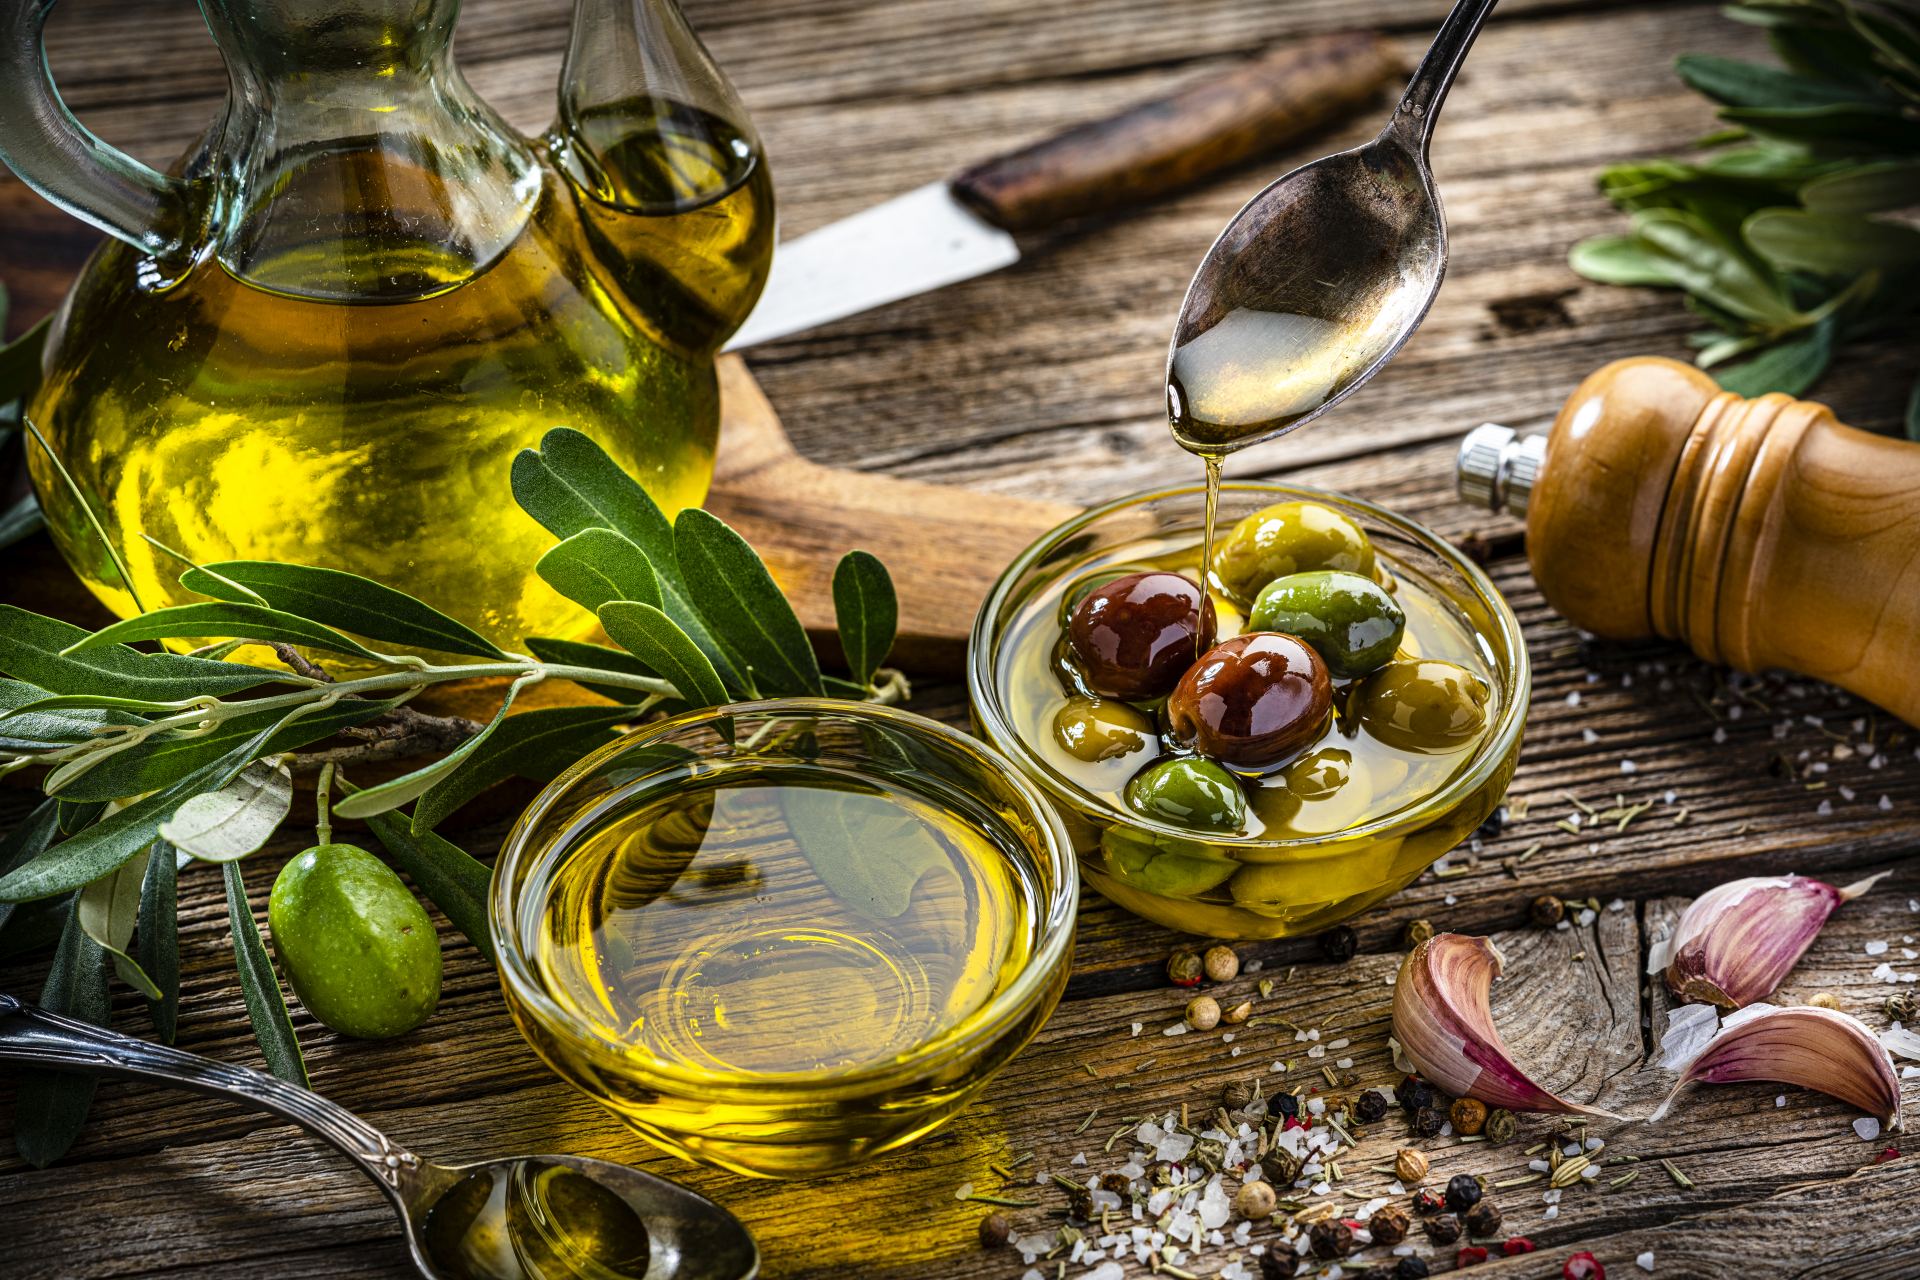  Itálie zajímavosti pěstování potraviny turistika olivy 